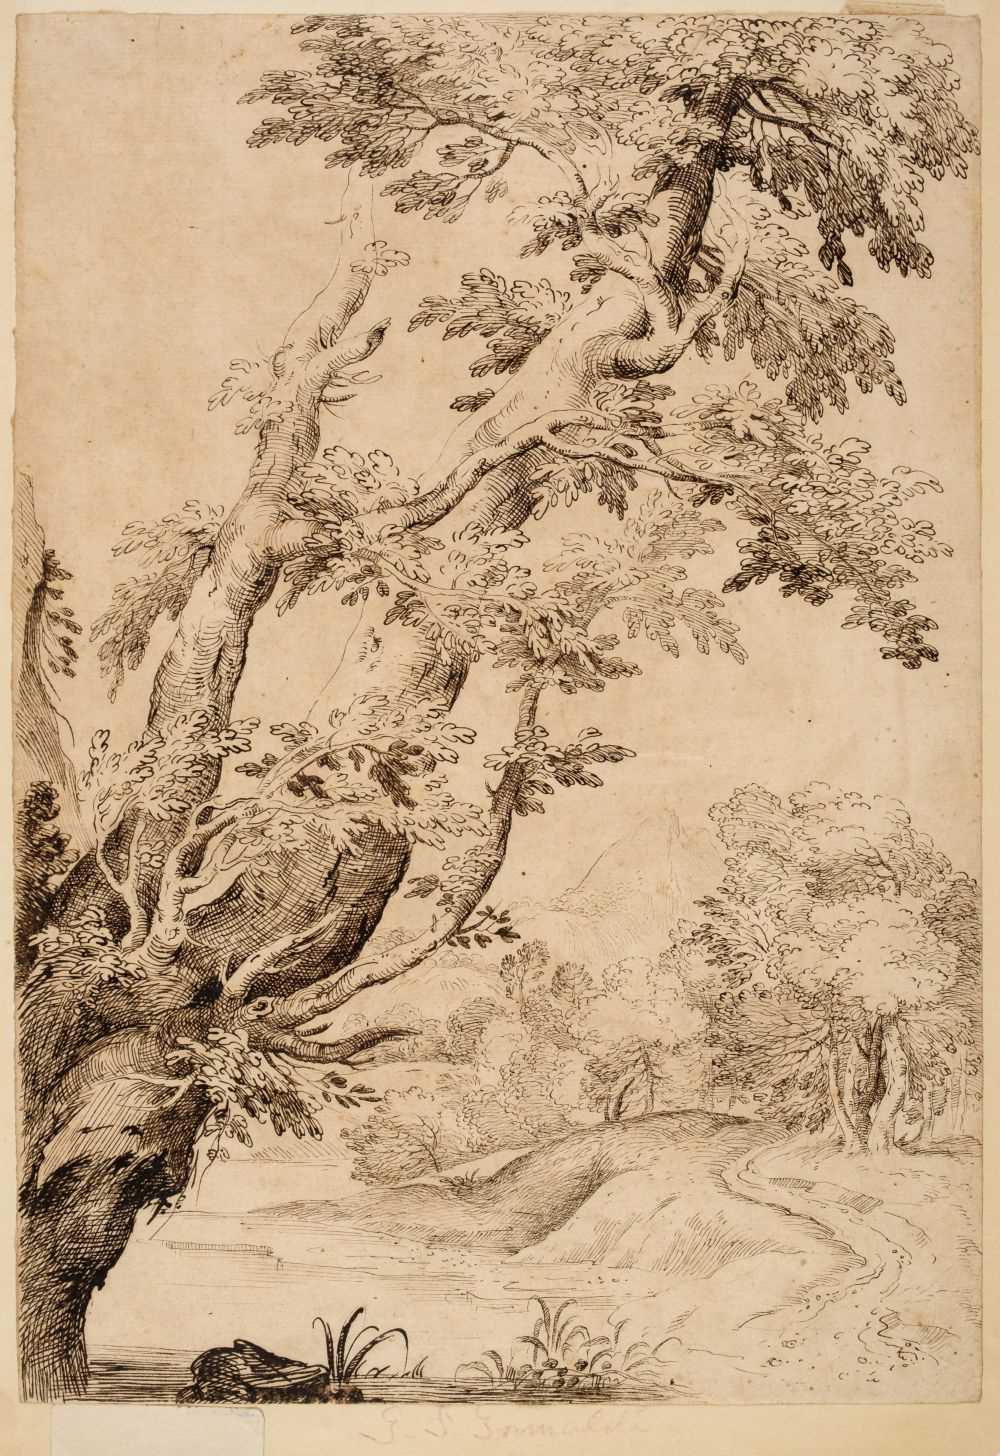 Lot 362 - Grimaldi (Giovanni Francesco, 1606-1680). Study of Trees in a River Landscape